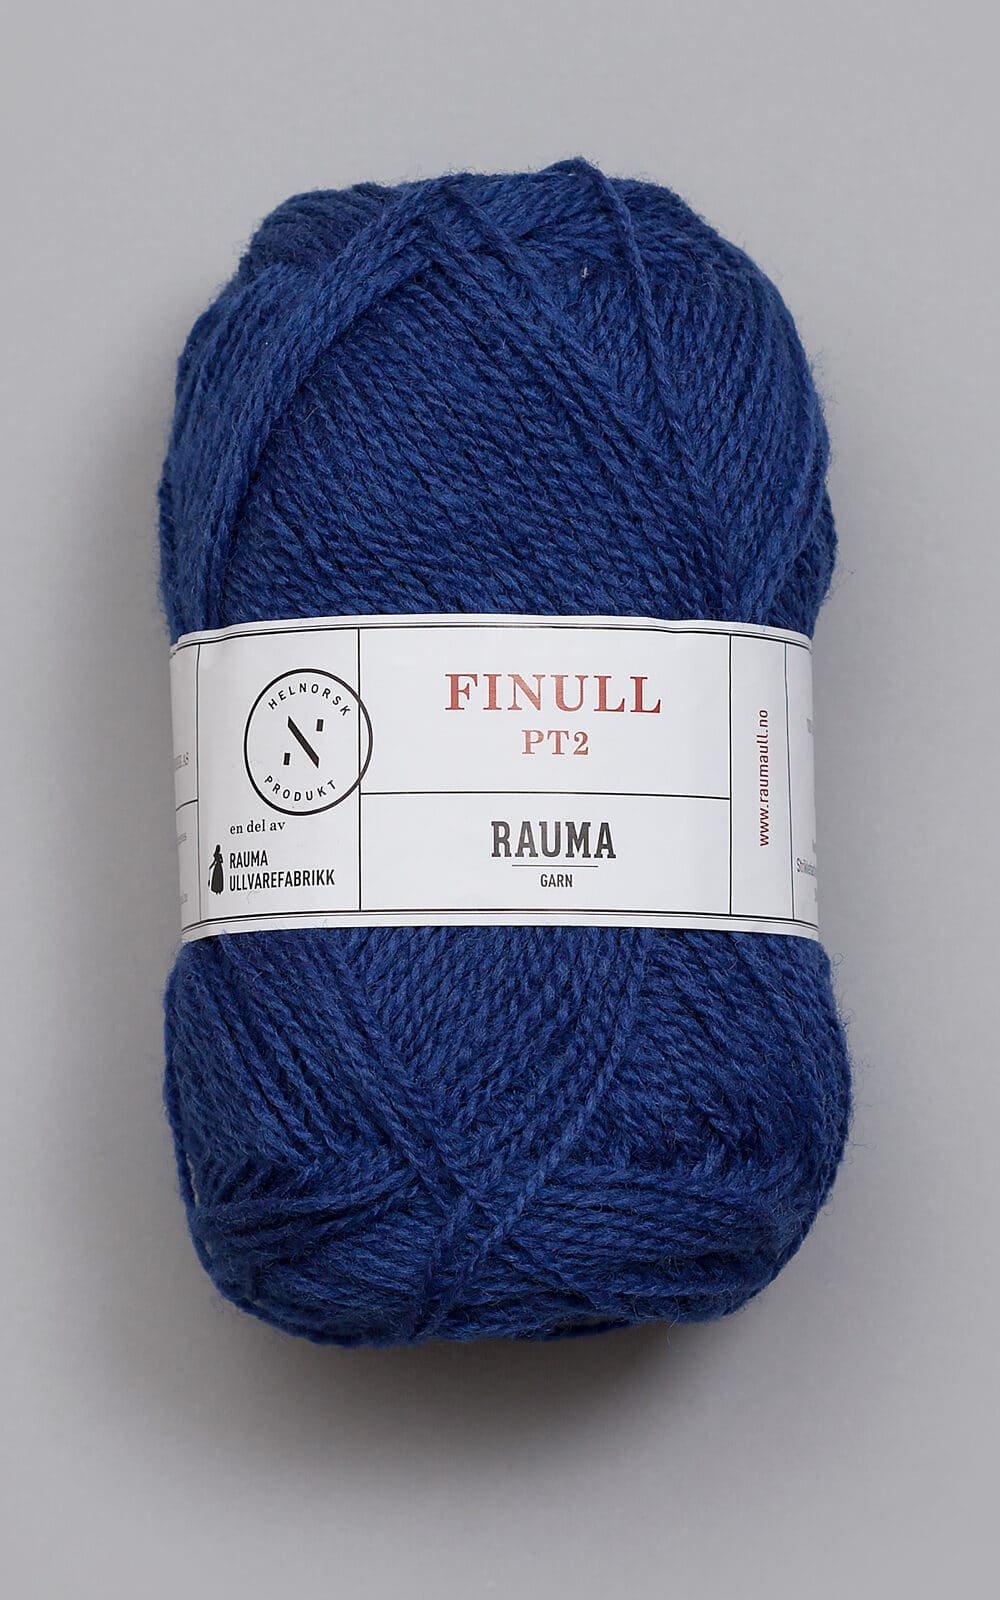 Se Finull - 443 Mørk jeansblå 443 Mørk jeansblå - variation - - Nordisk Garn hos Nordisk Garn